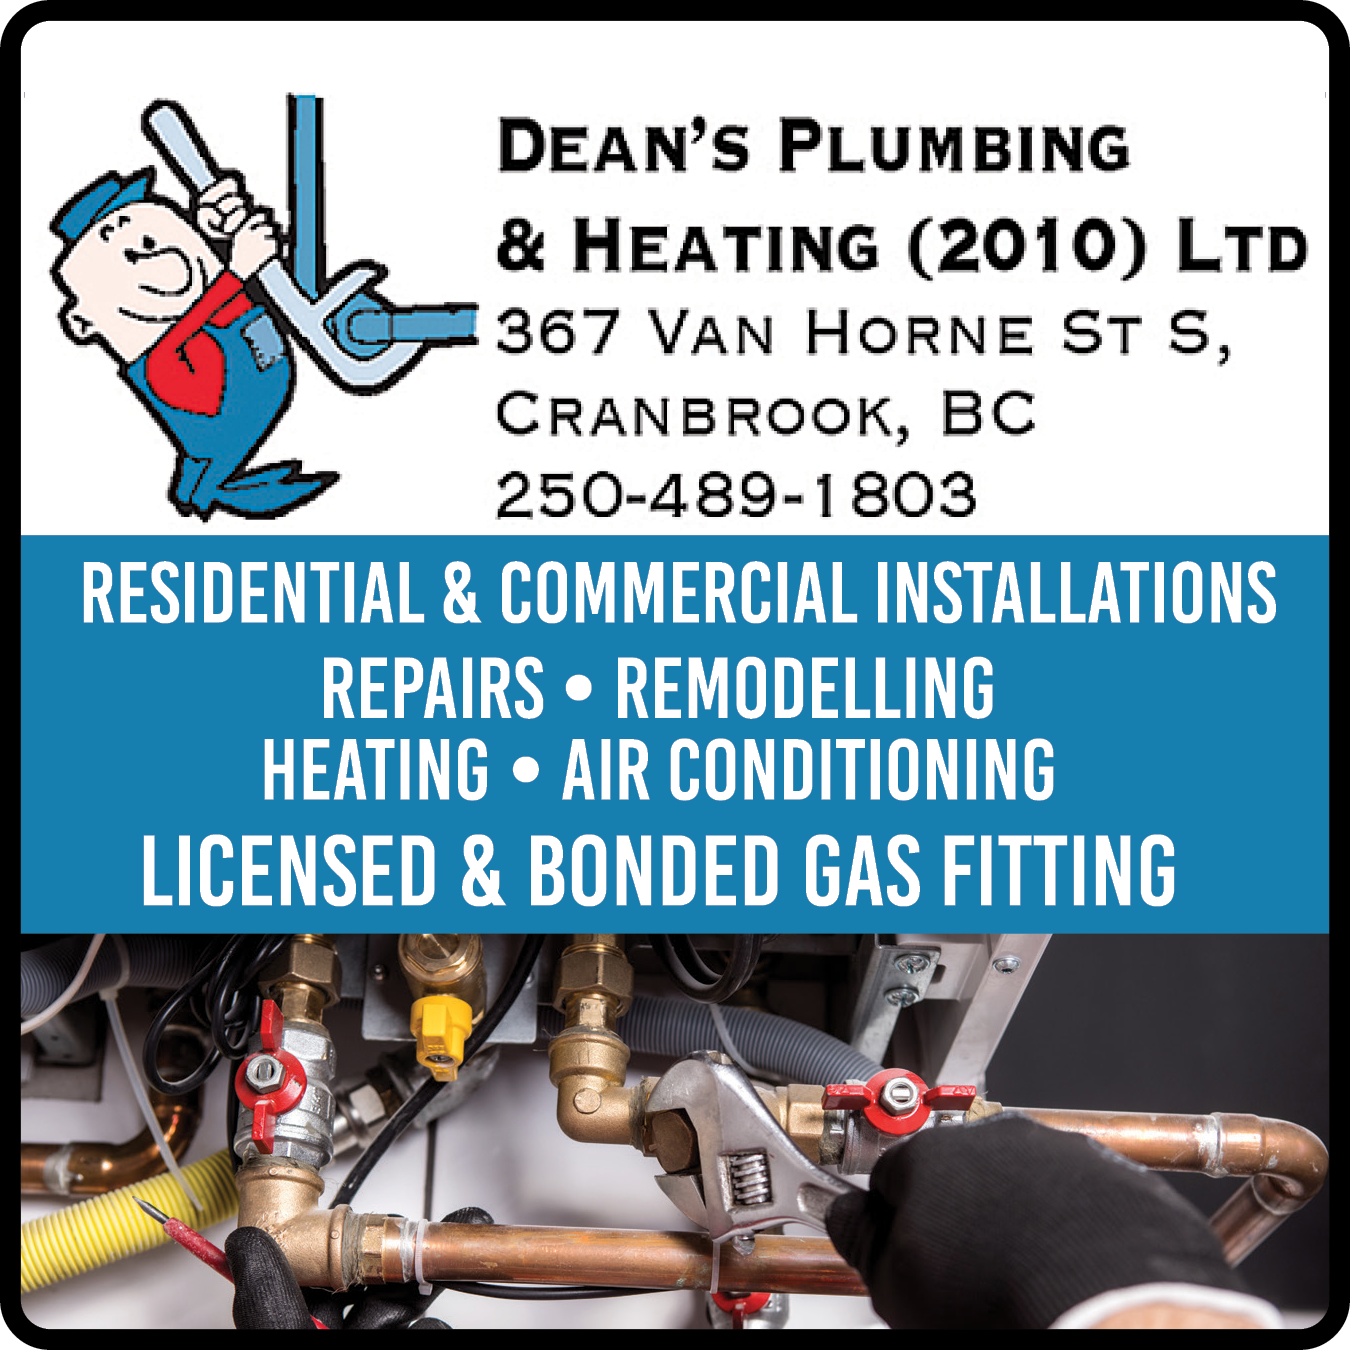 Dean's Plumbing & Heating Ltd.